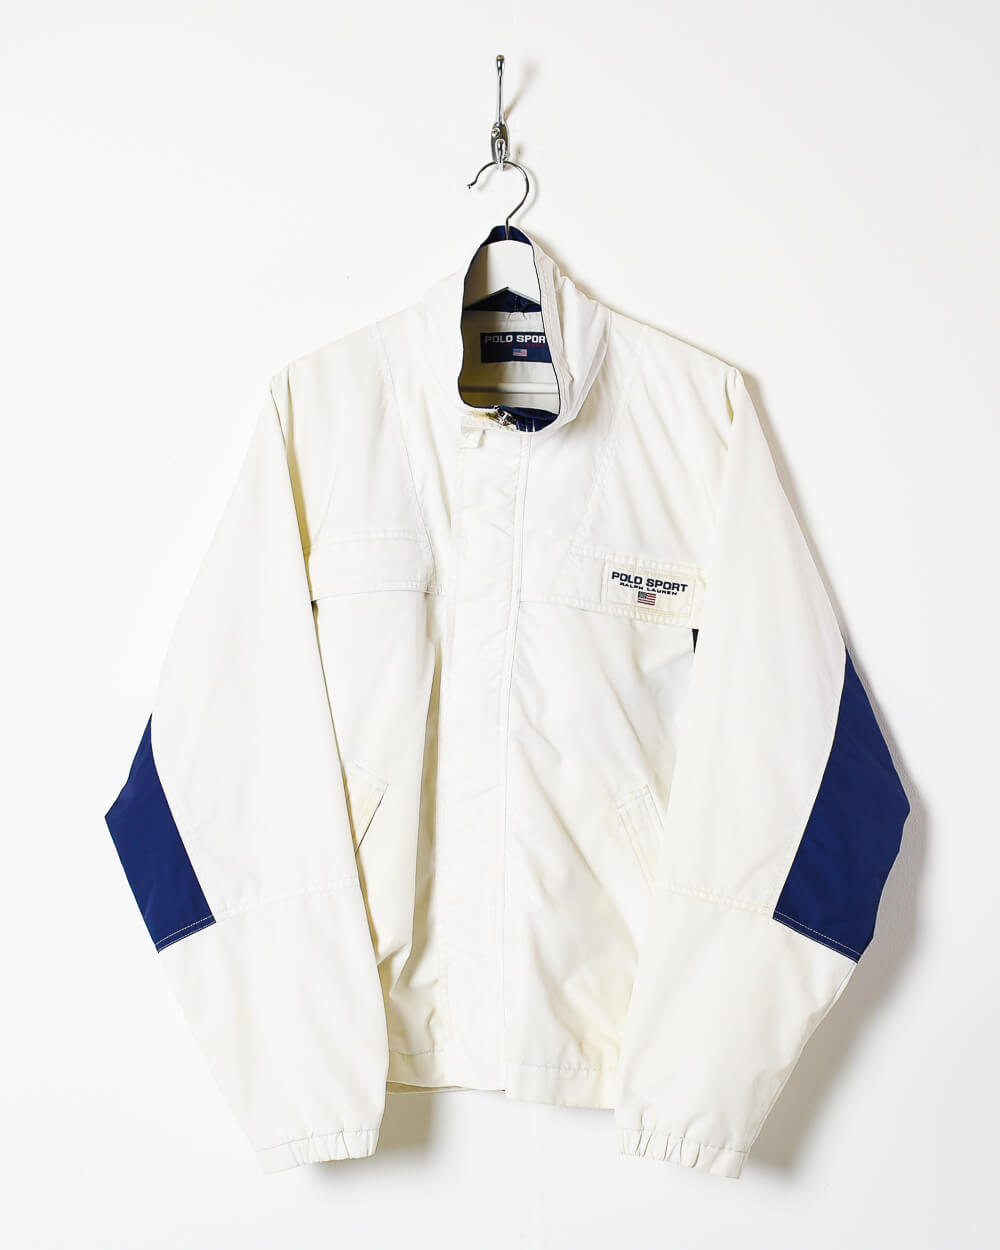 Ralph Lauren Polo Sport Windbreaker Jacket- Large